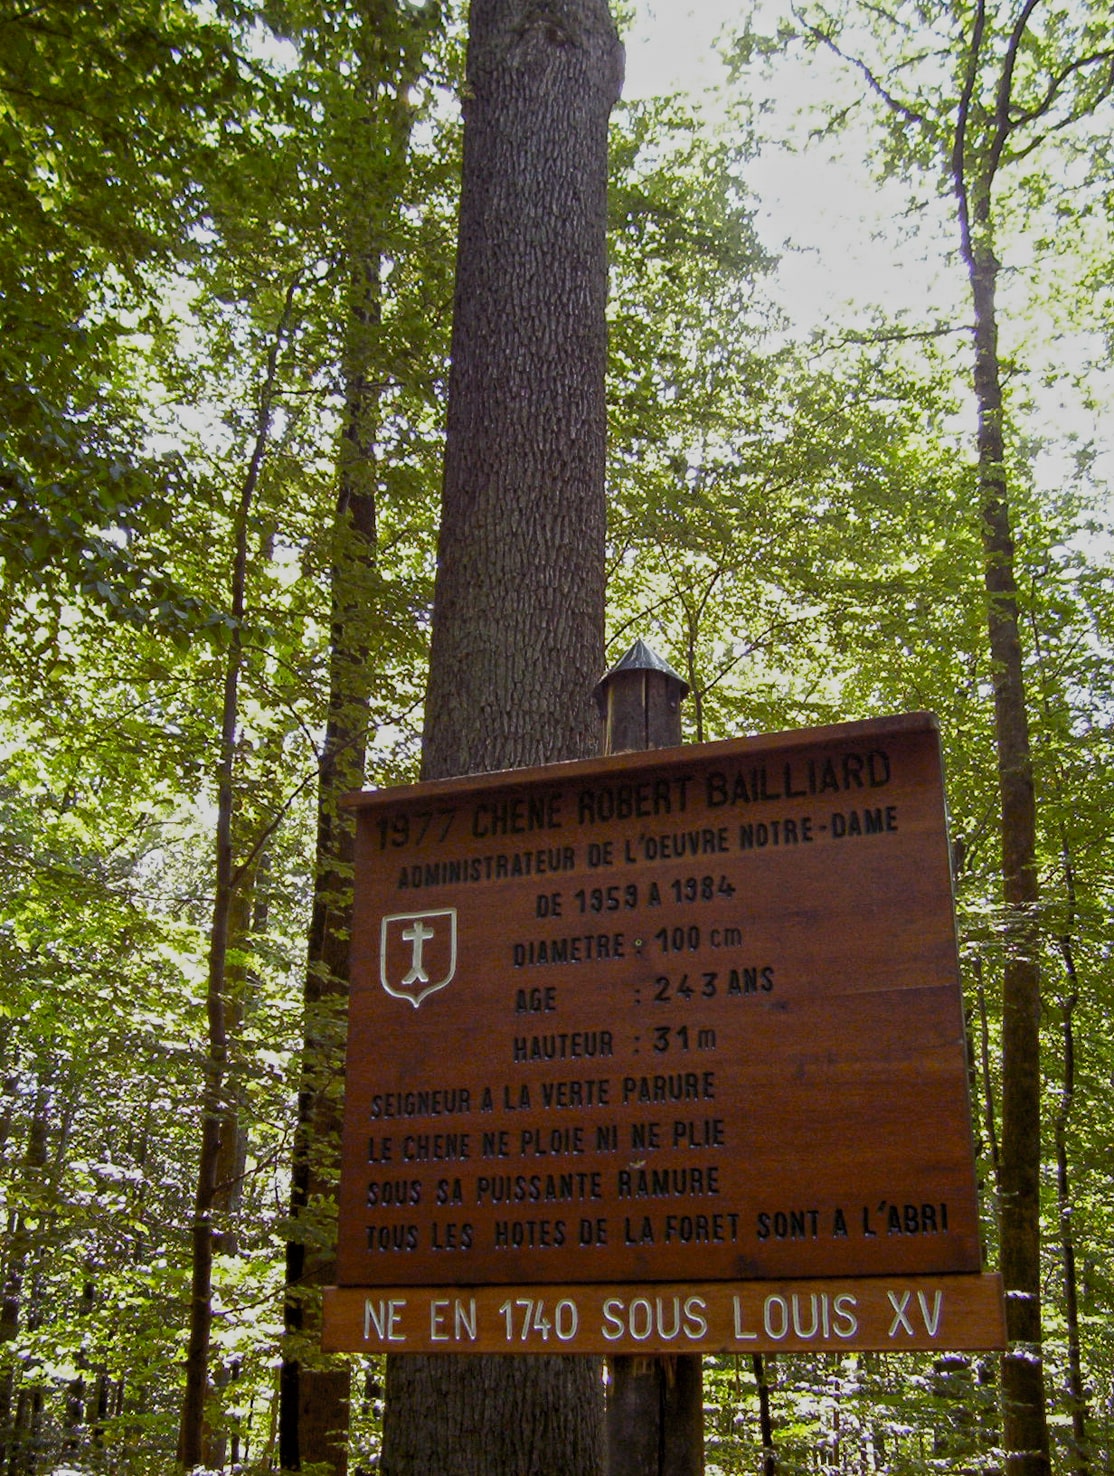 Le chêne Bailliard dans la forêt de l’Elmerforst, crédit F.OND, 2003